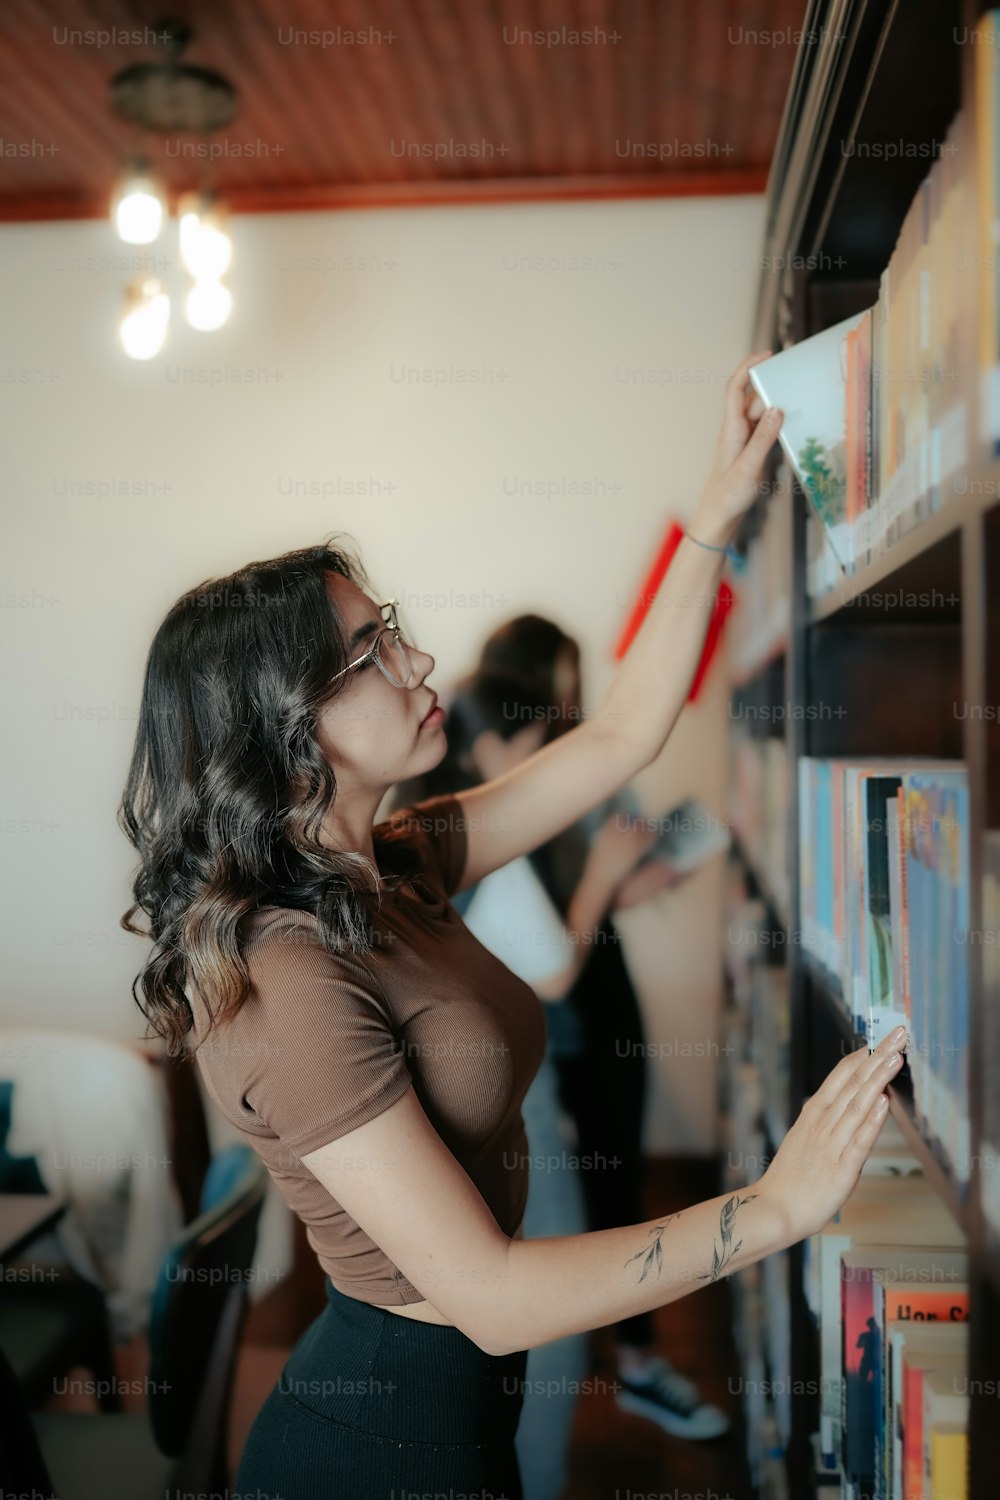 Una mujer mirando un libro en un estante